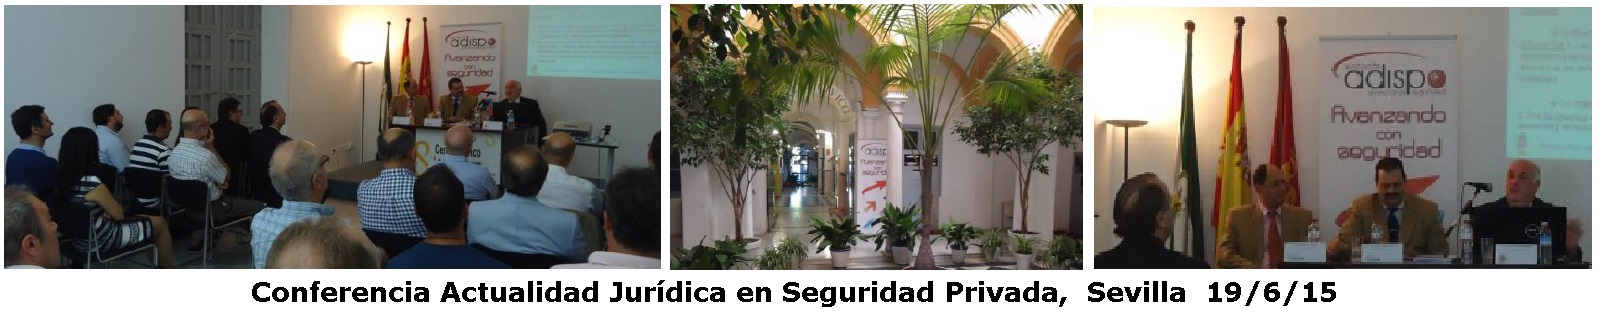 Conferencia_Actualidad_Jurdica_en_Seguridad_Privada_Sevilla_D_Francisco_Muoz_Usano.jpg